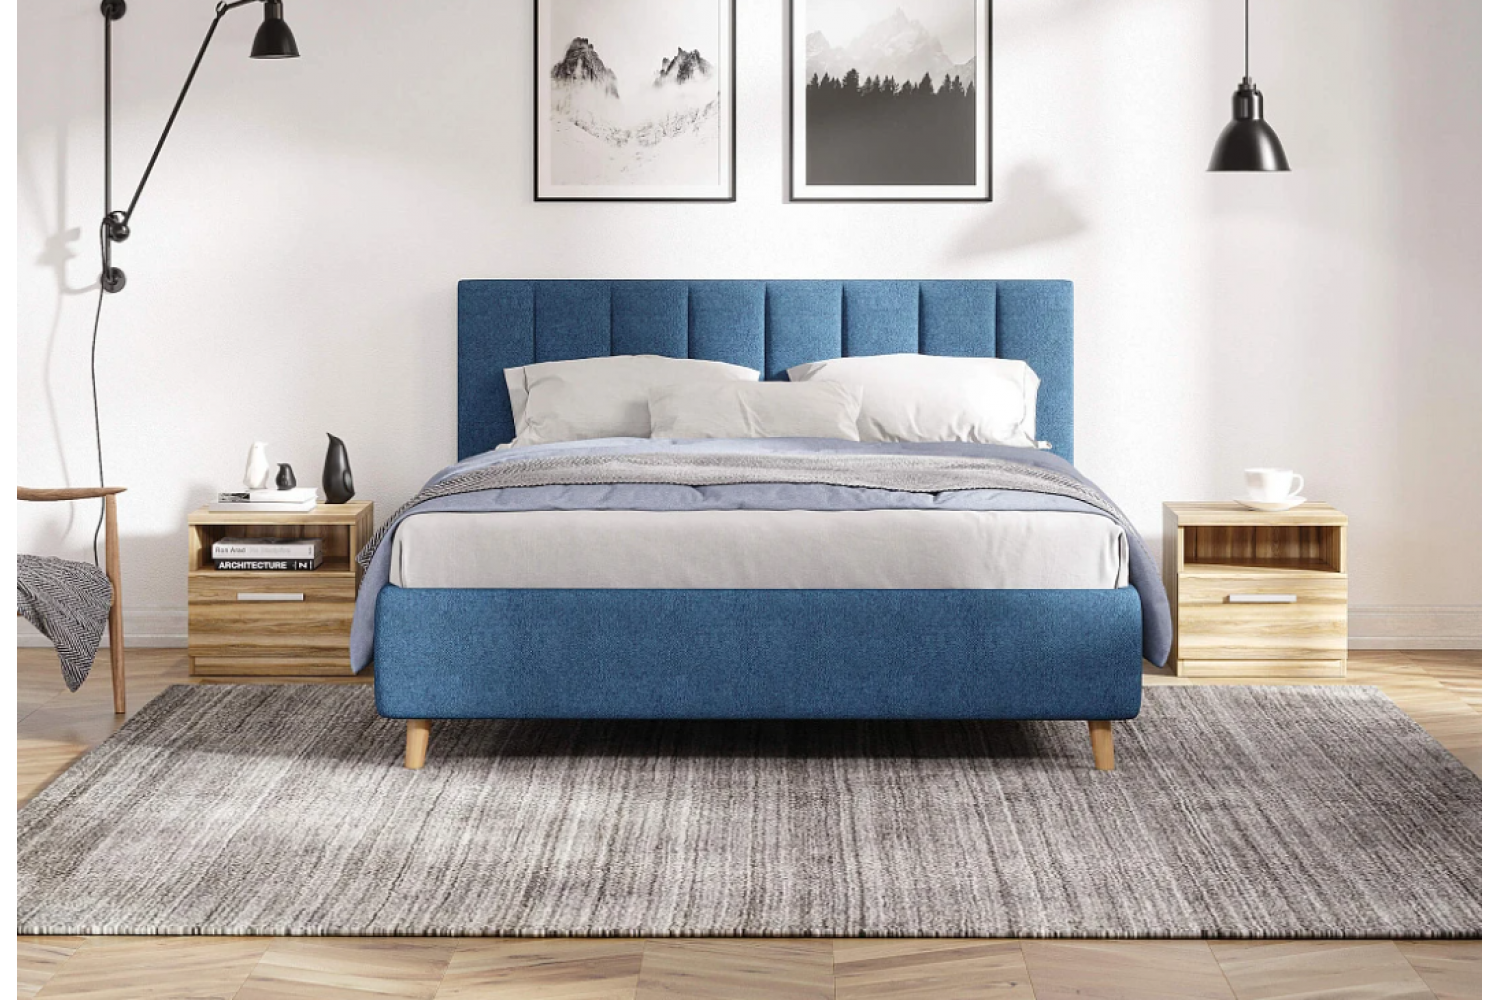 Новые модели доступных кроватей и мебели в скандинавском стиле